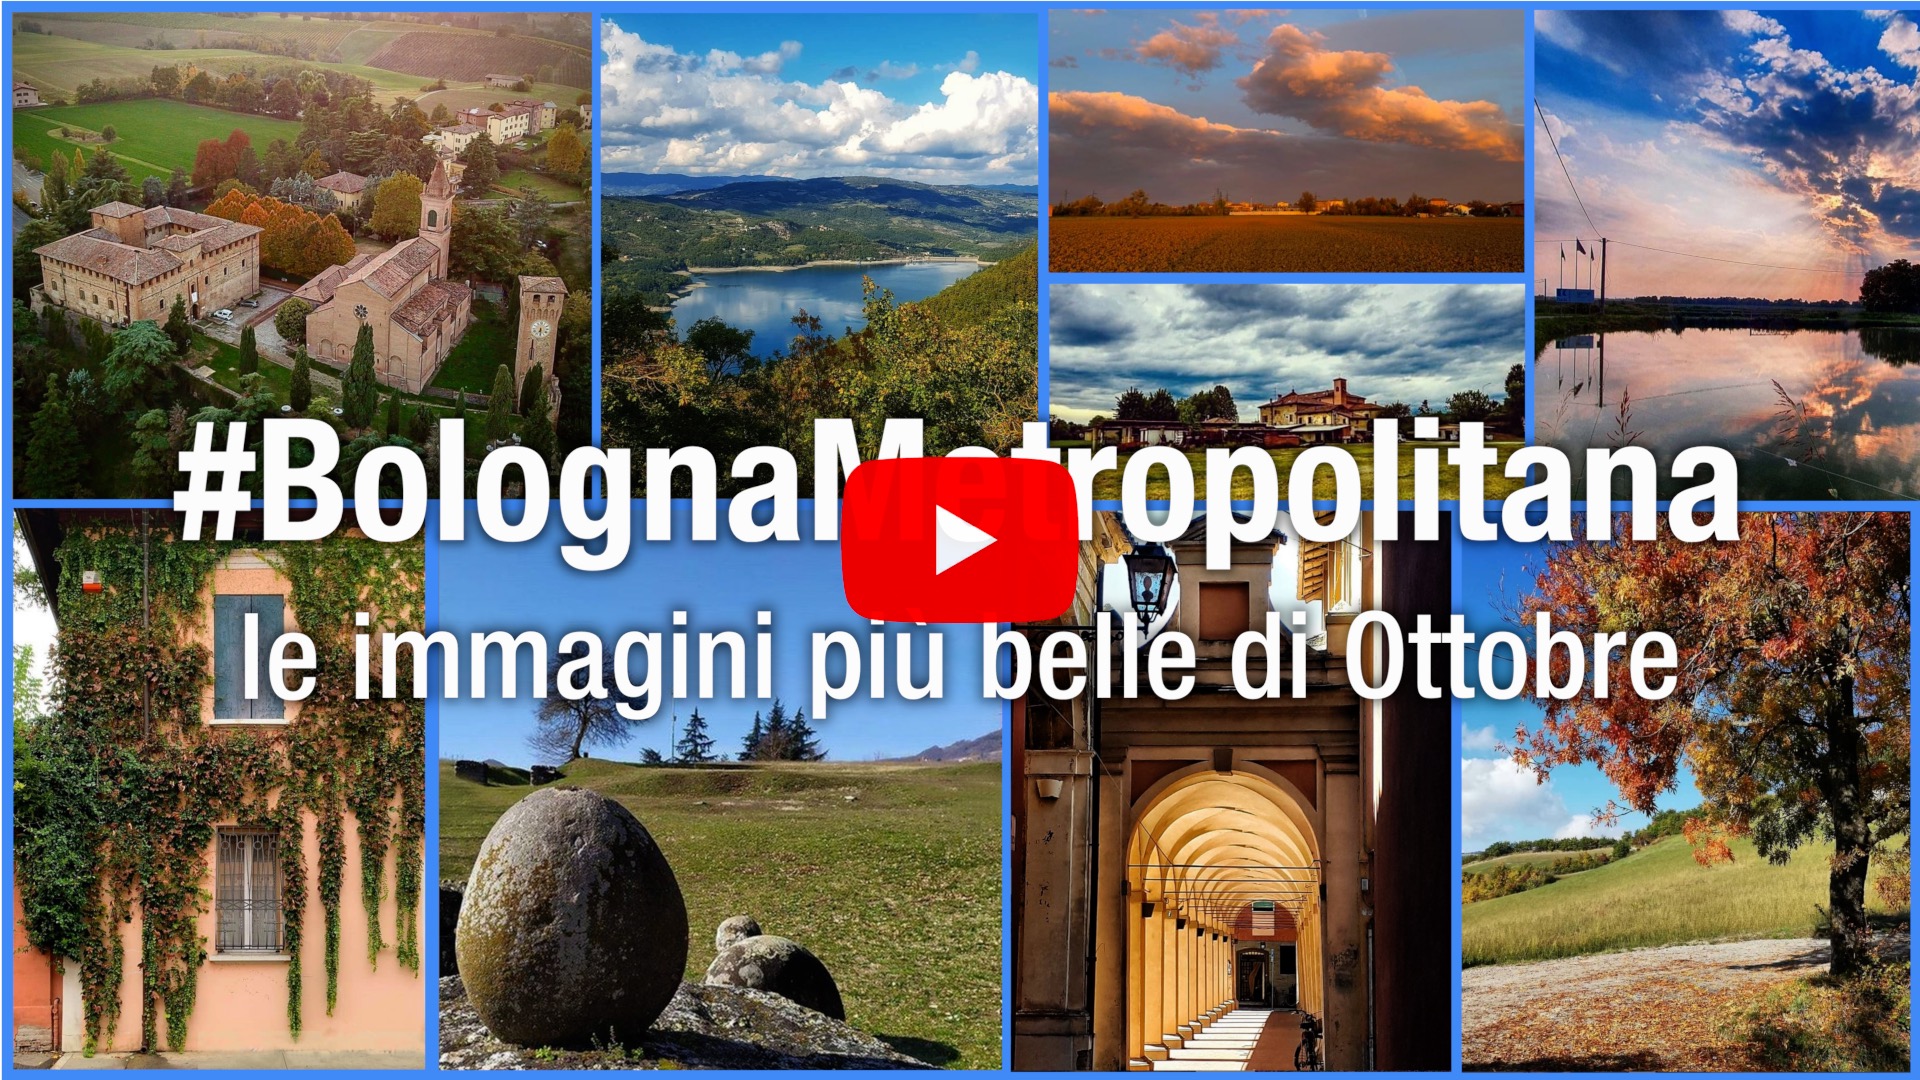 #BolognaMetropolitana - Le immagini più belle di ottobre 2020